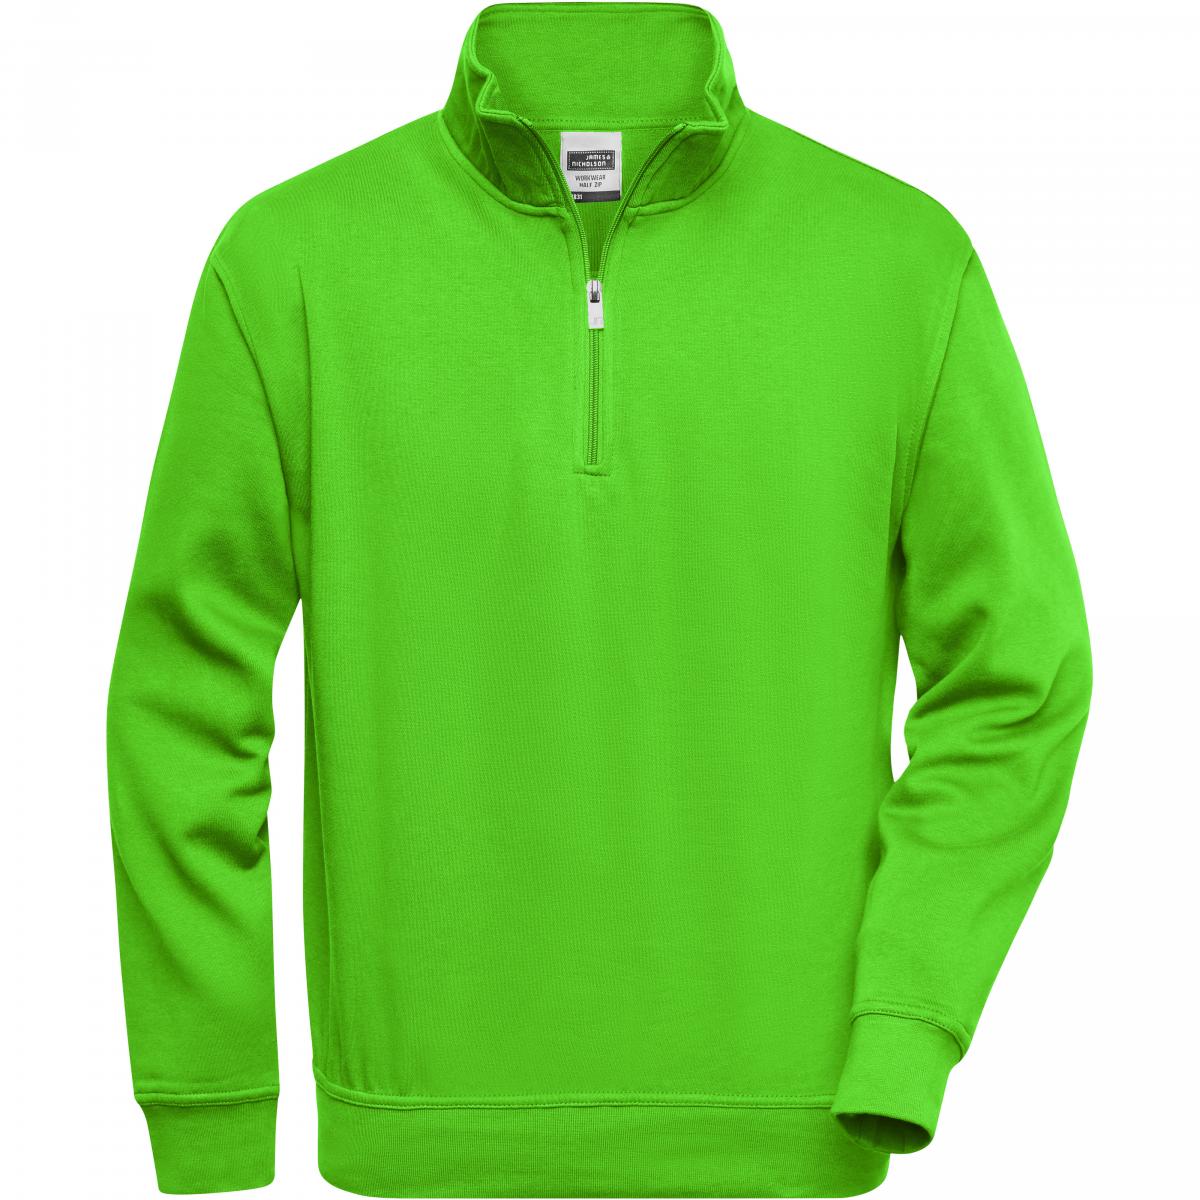 Hersteller: James+Nicholson Herstellernummer: JN831 Artikelbezeichnung: Workwear Half Zip Sweatshirt +Waschbar bis 60 °C Farbe: Lime Green